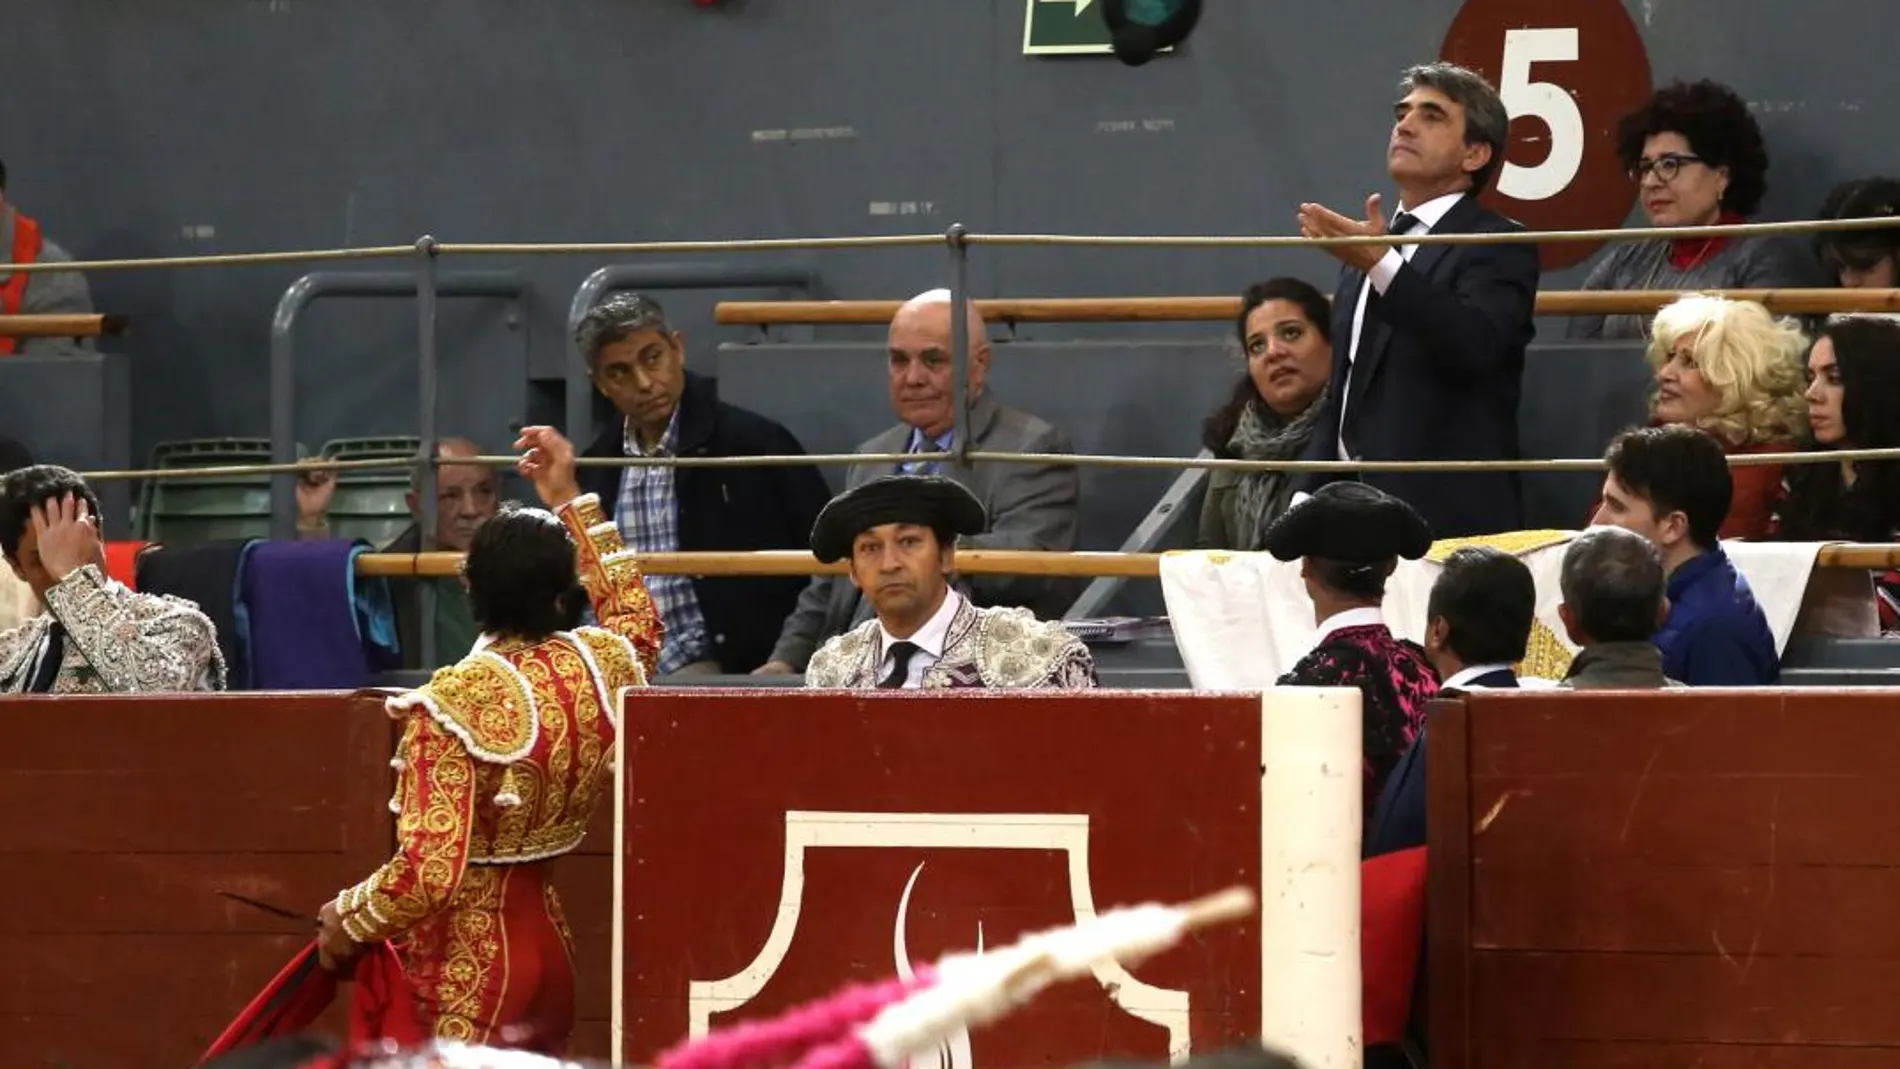 Curro Díaz brindando uno de sus toros alganadero Victorino Martín hijo